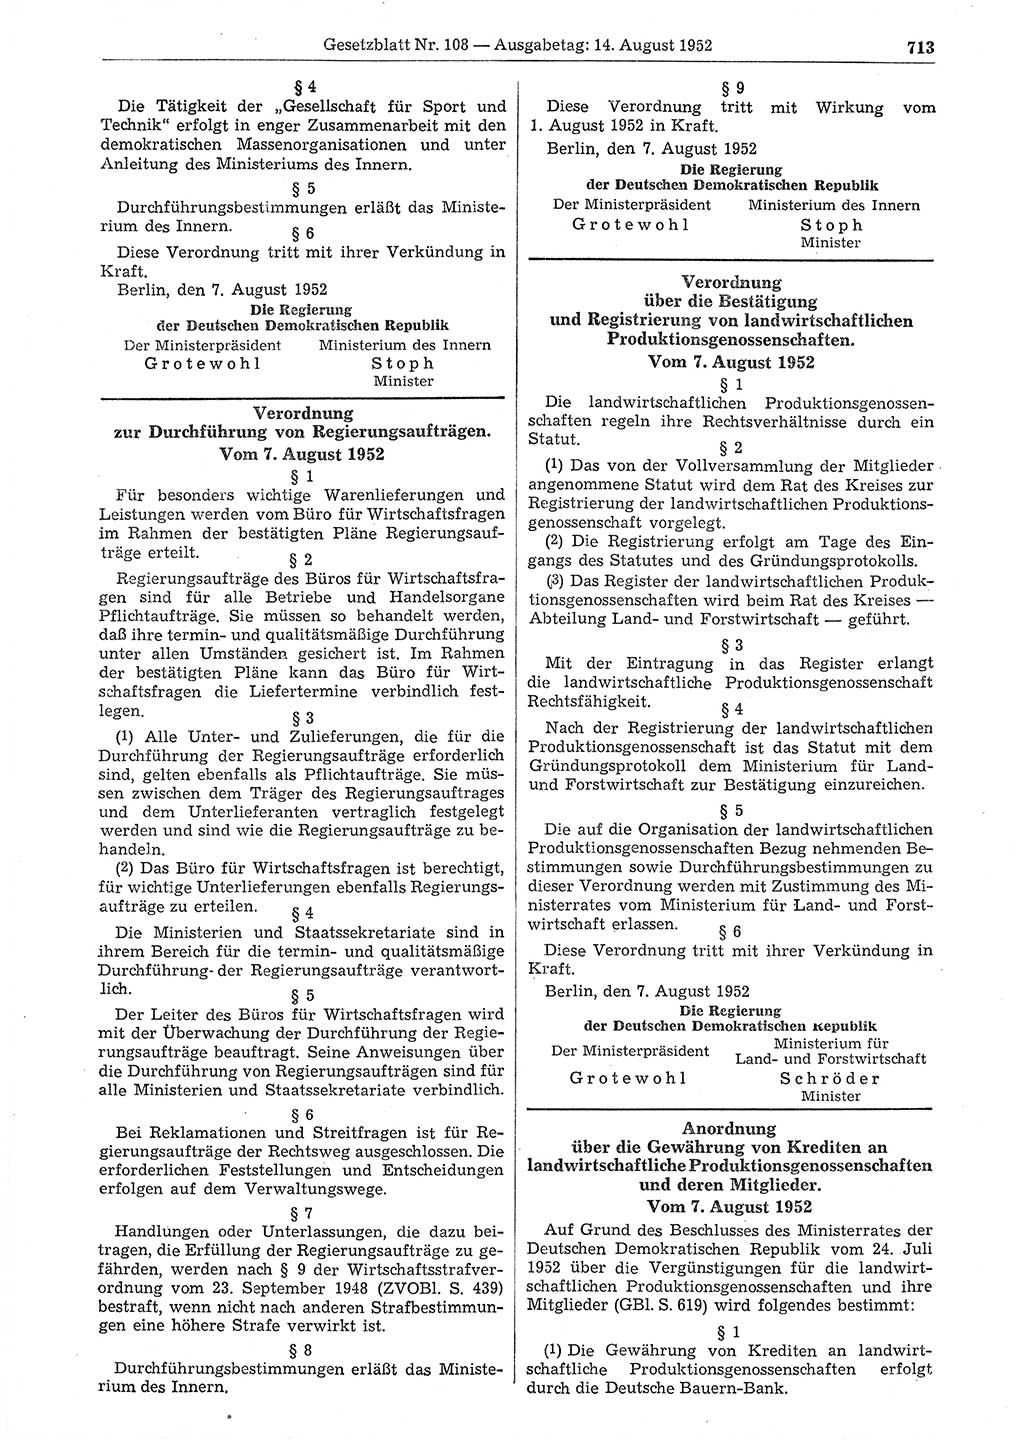 Gesetzblatt (GBl.) der Deutschen Demokratischen Republik (DDR) 1952, Seite 713 (GBl. DDR 1952, S. 713)